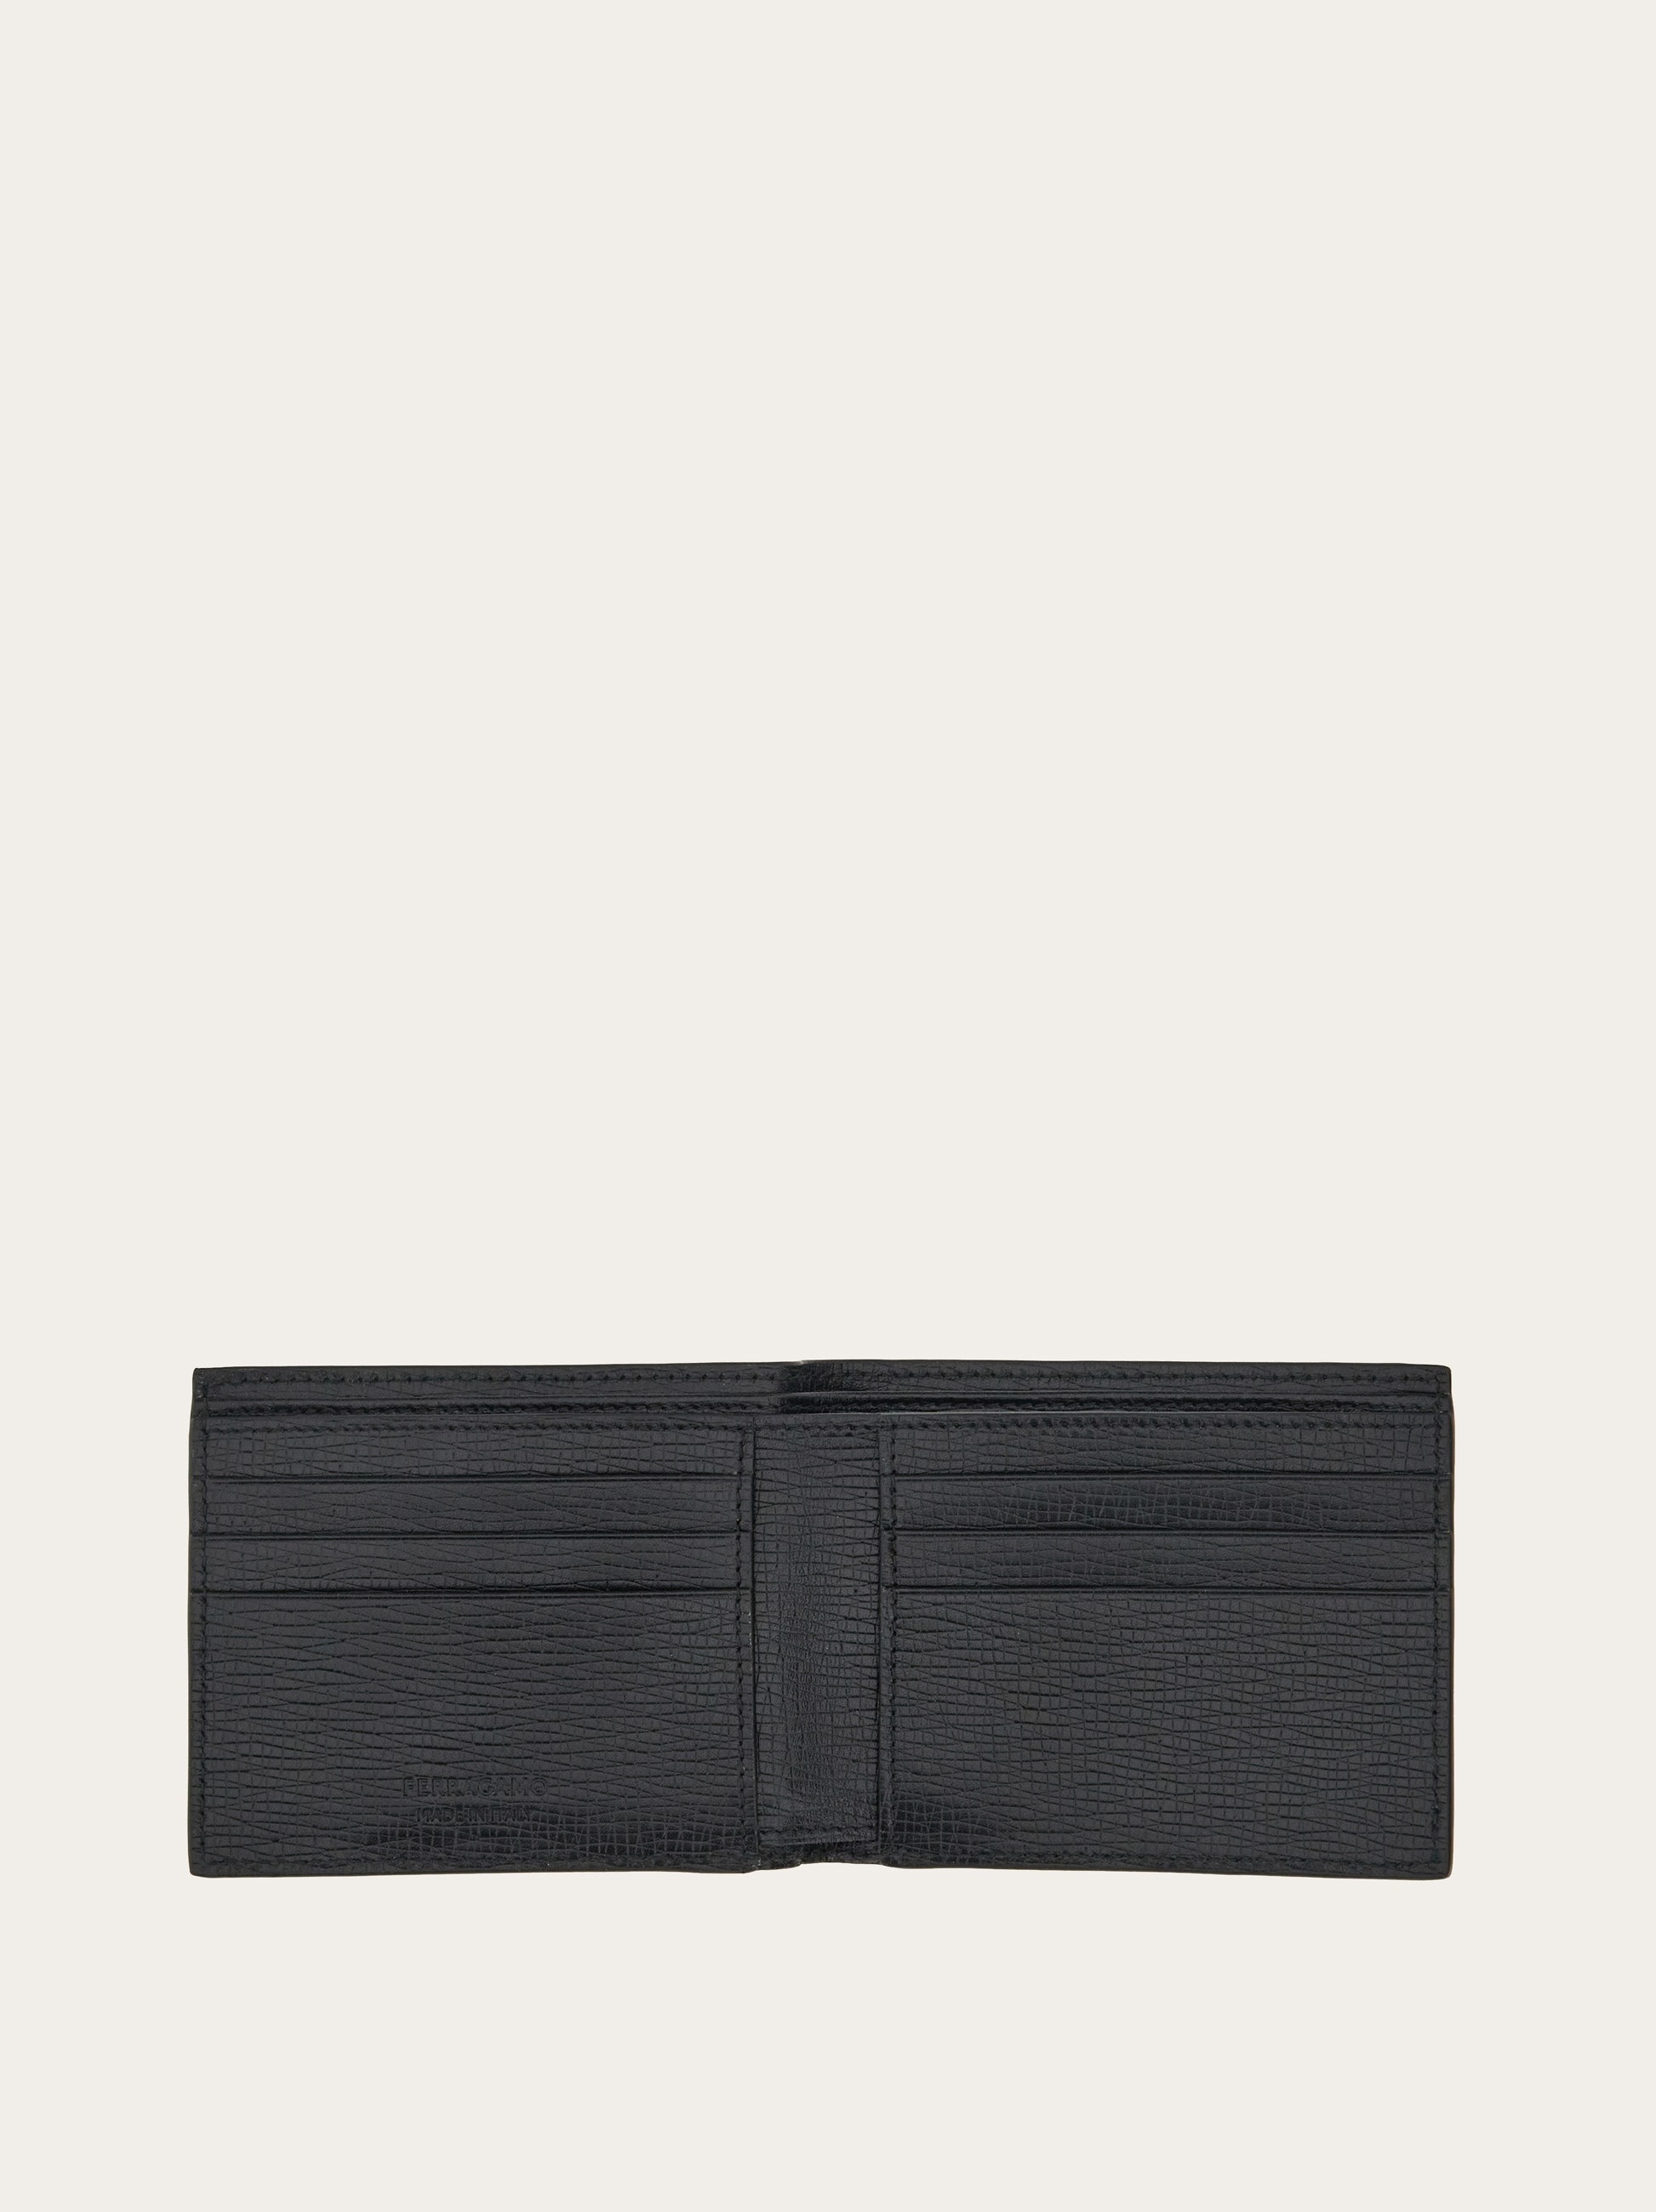 Wallet with custom metal plate - 4